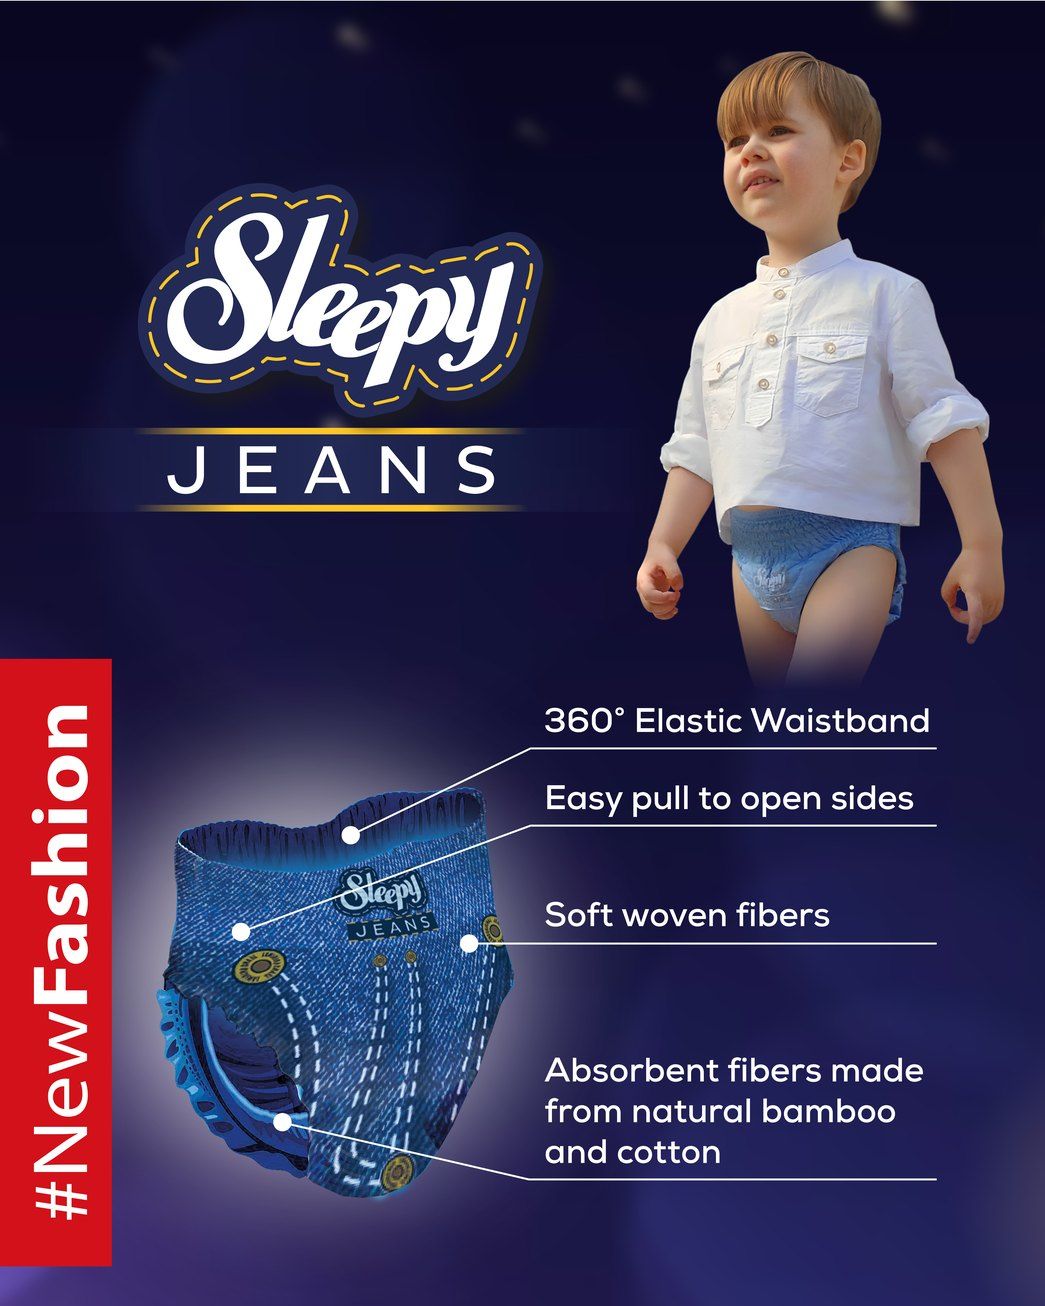 Scutece-chiloțel pentru bebeluși Sleepy Jeans Ultra Sensitive, mărime 4 Maxi, 7-14kg, 30 buc.